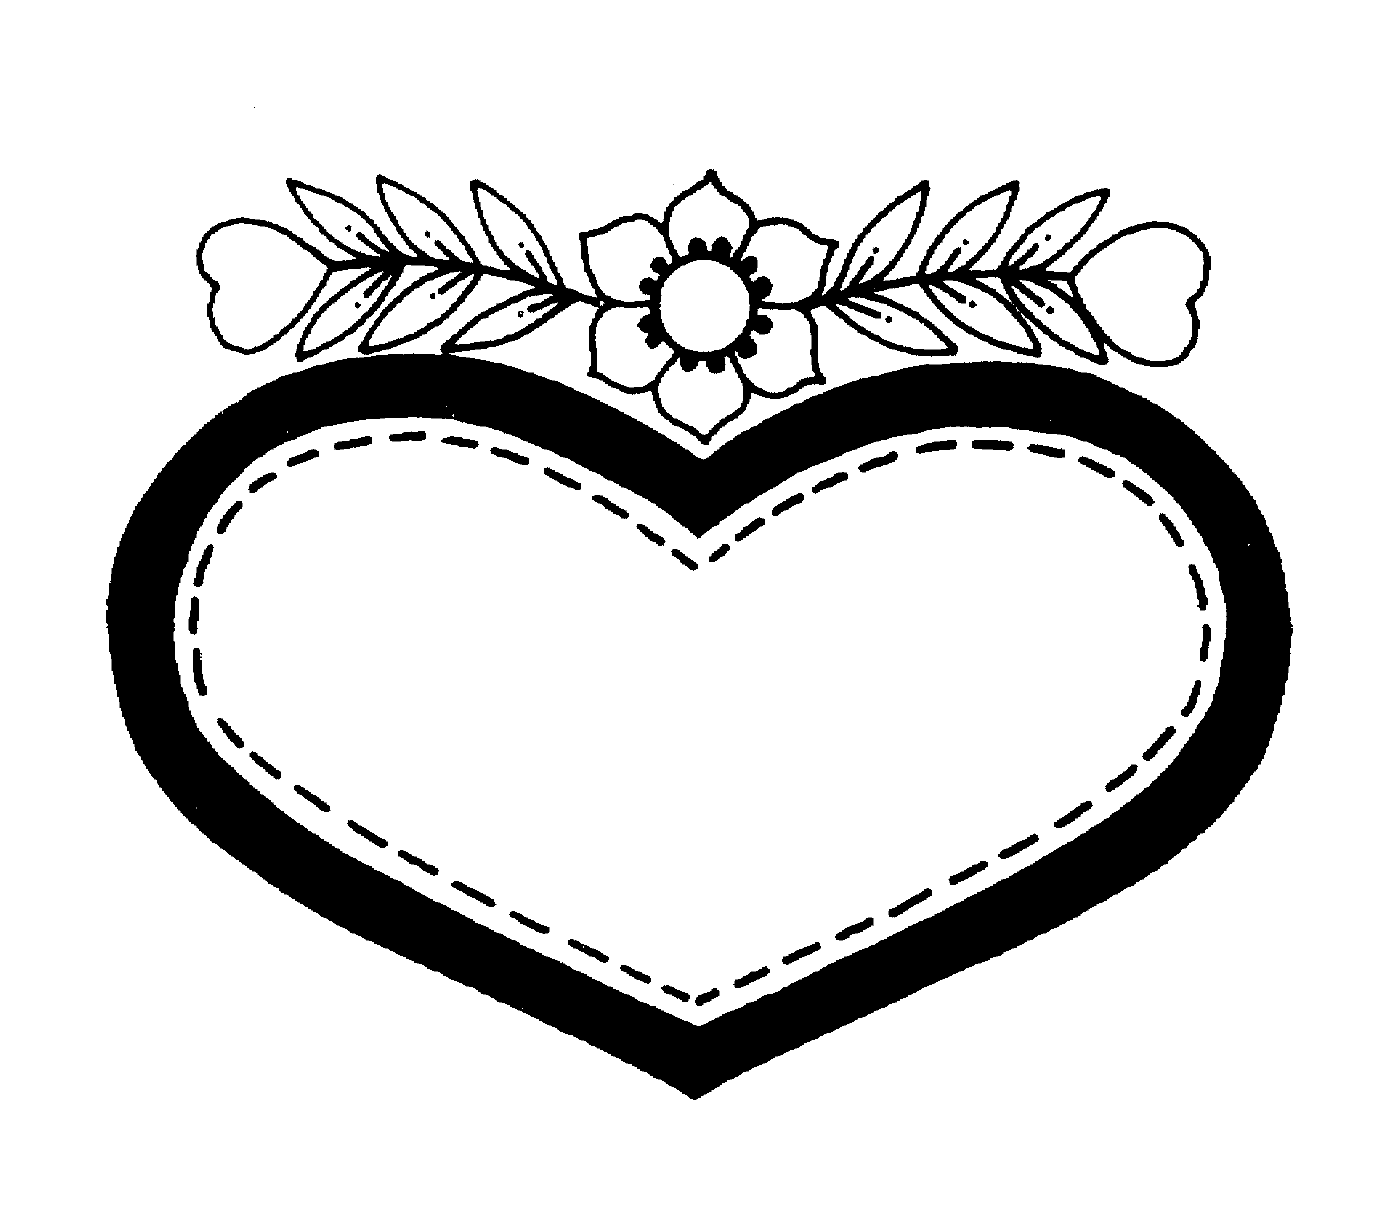  Herz des Valentinstags mit einer zarten Blume 